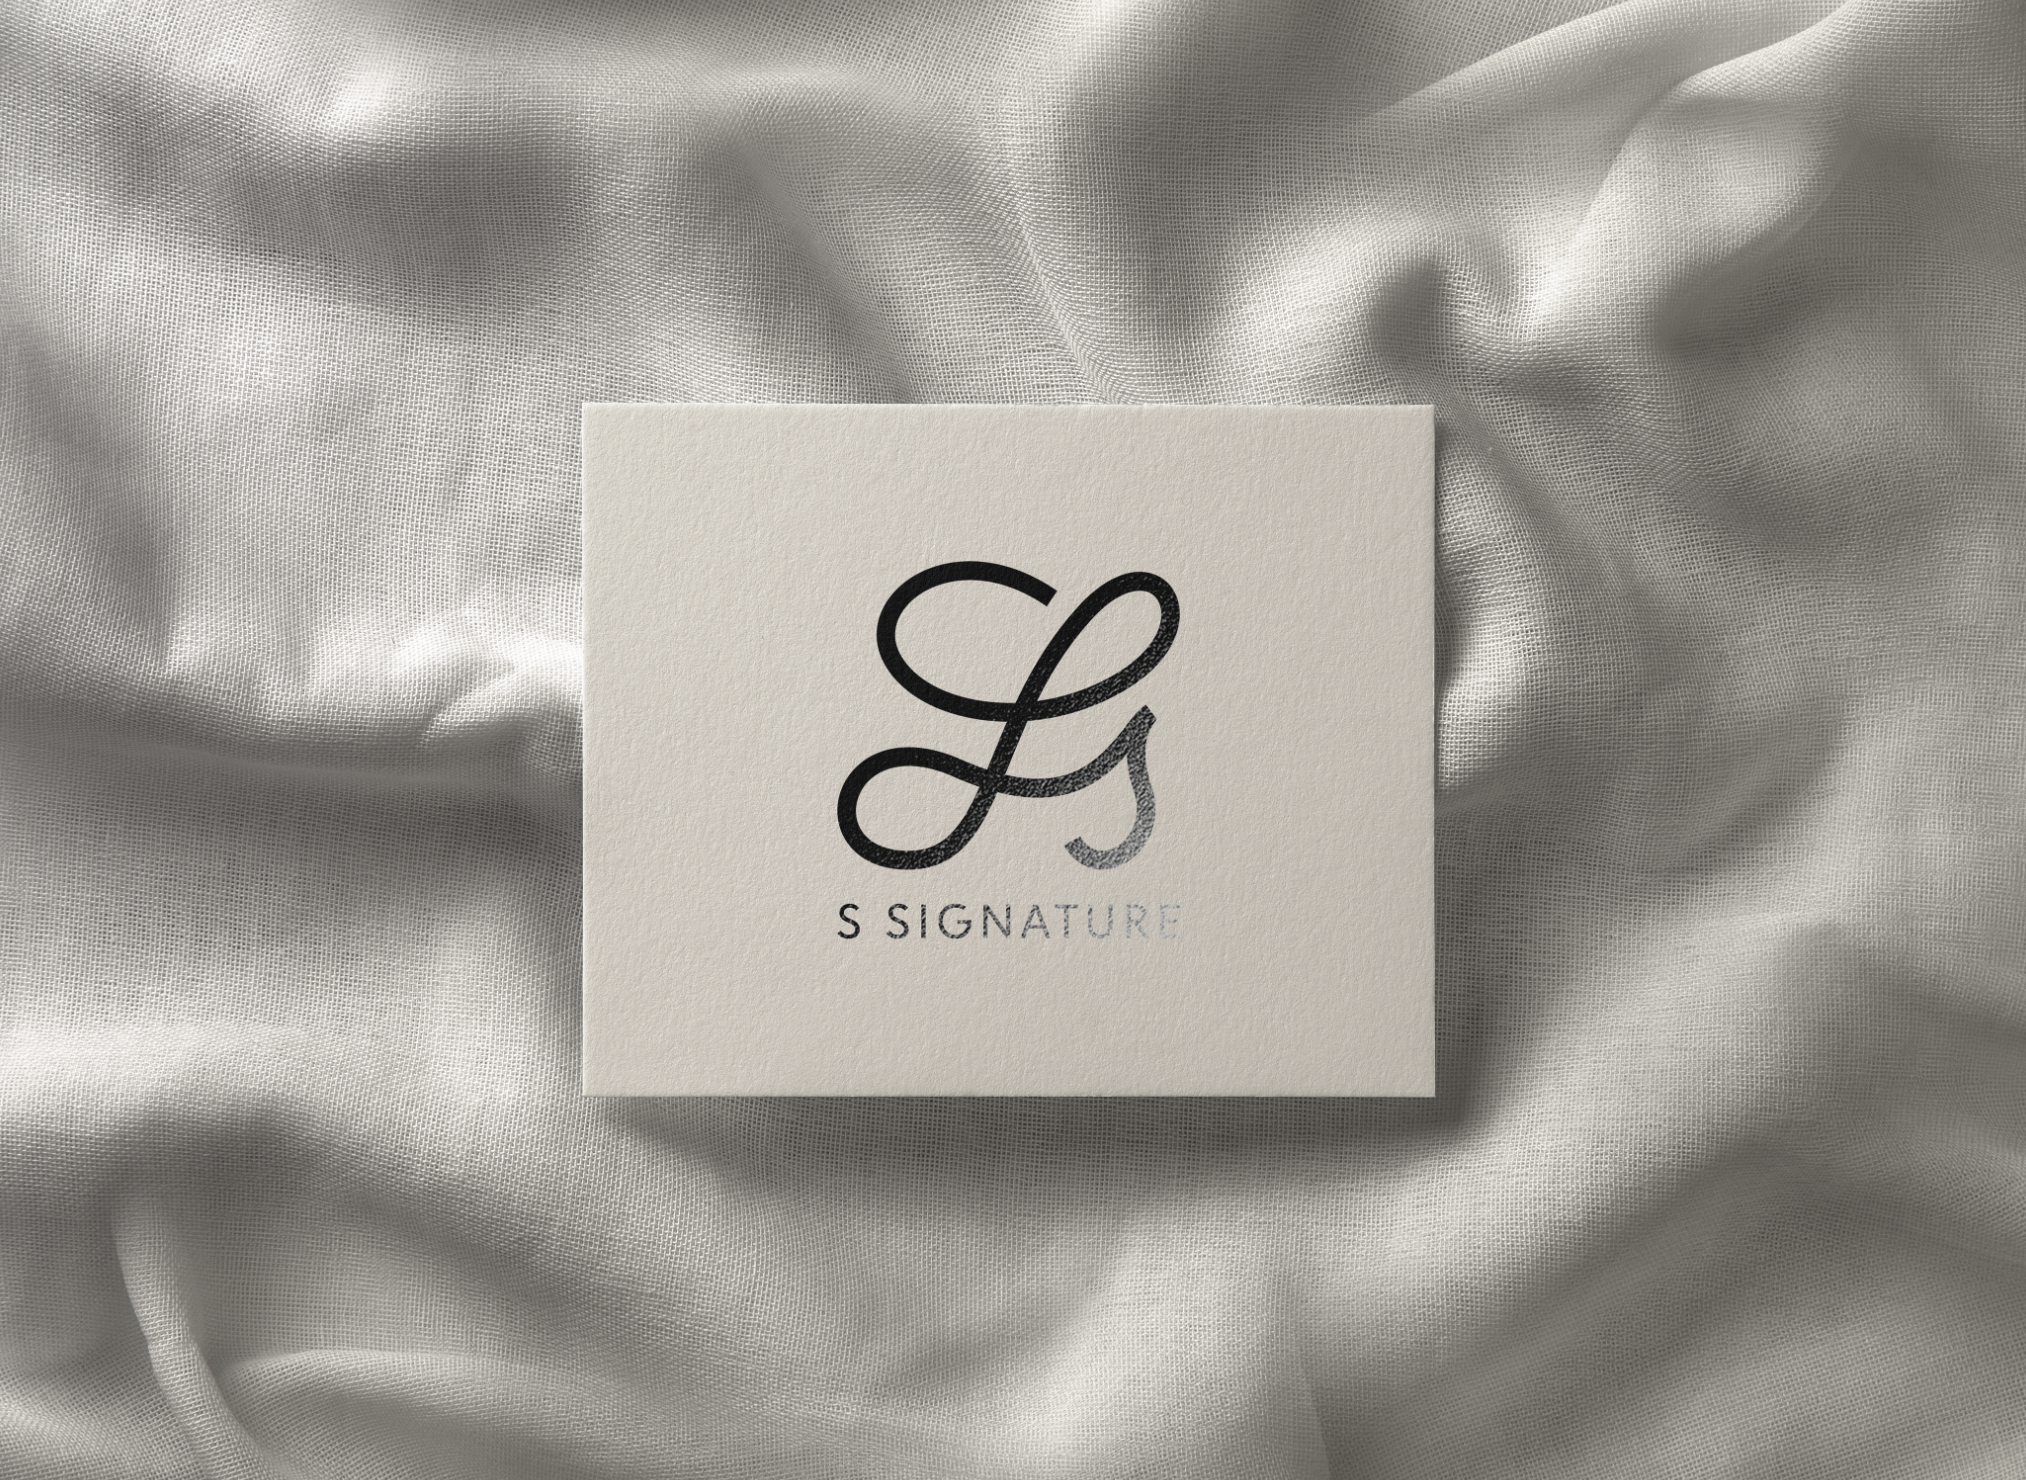 S Signature